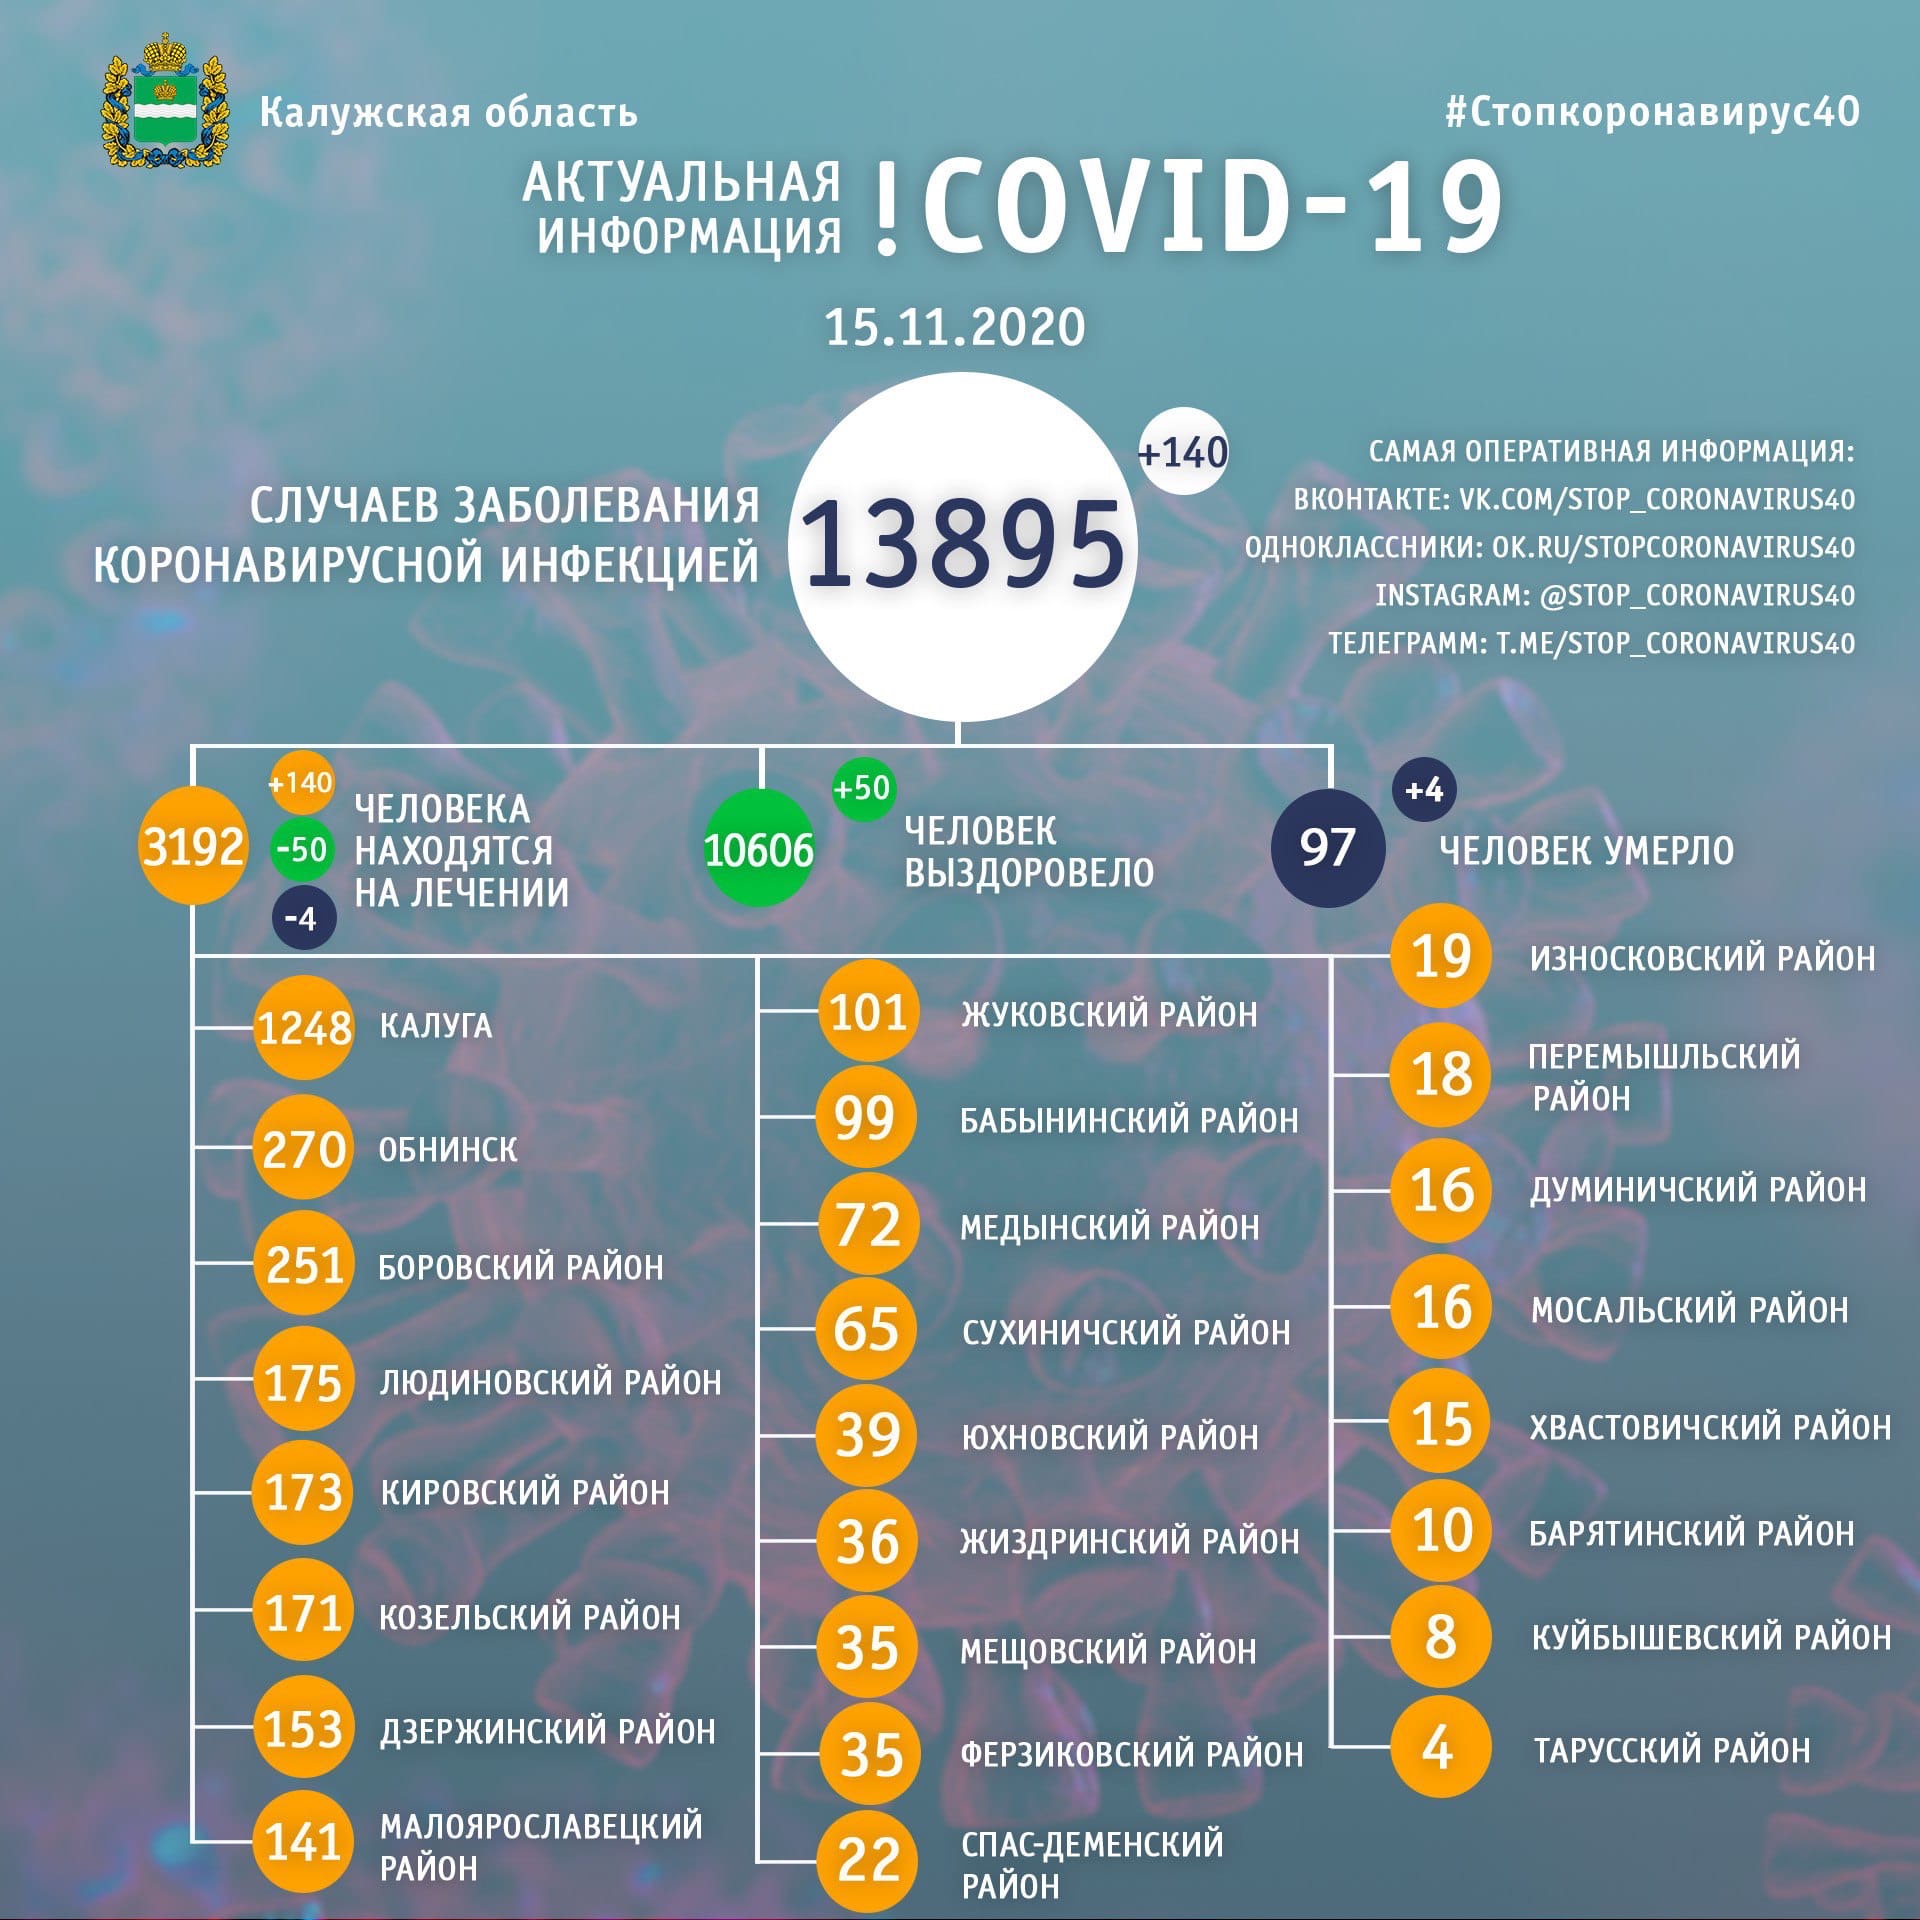 Официальная статистика по коронавирусу в Калужской области на 15 ноября 2020 года.